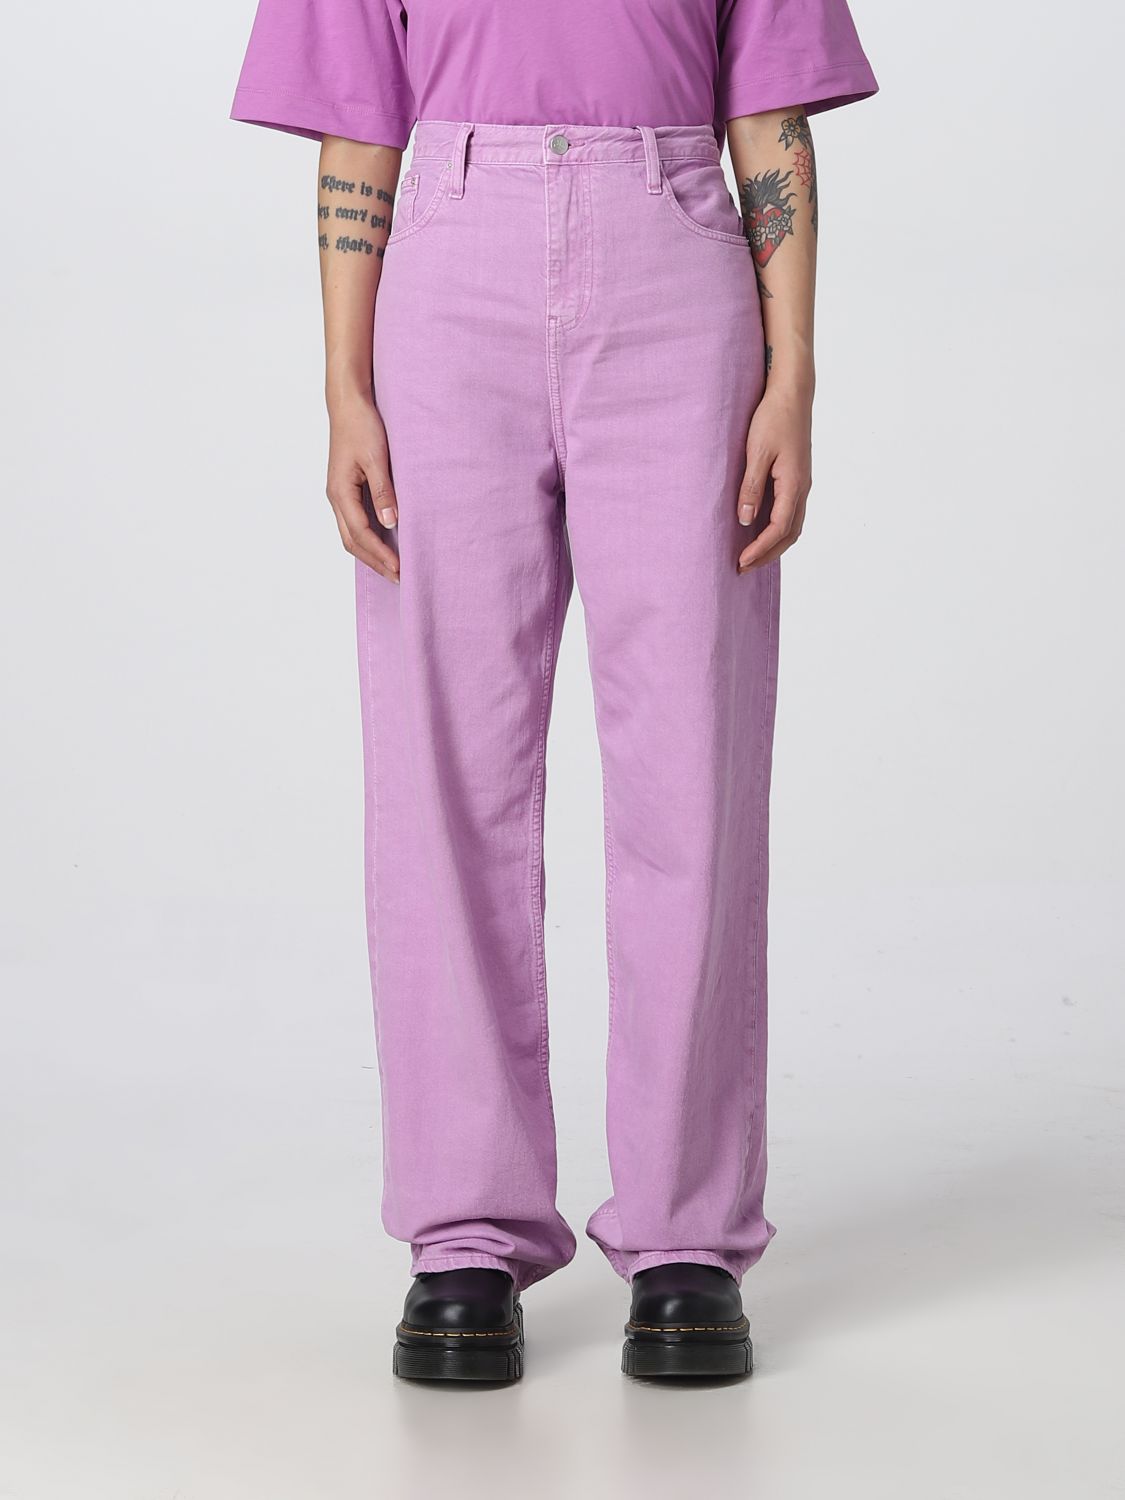 verachten Zenuw musical CALVIN KLEIN JEANS: pants for woman - Orchid | Calvin Klein Jeans pants  J20J220182 online on GIGLIO.COM